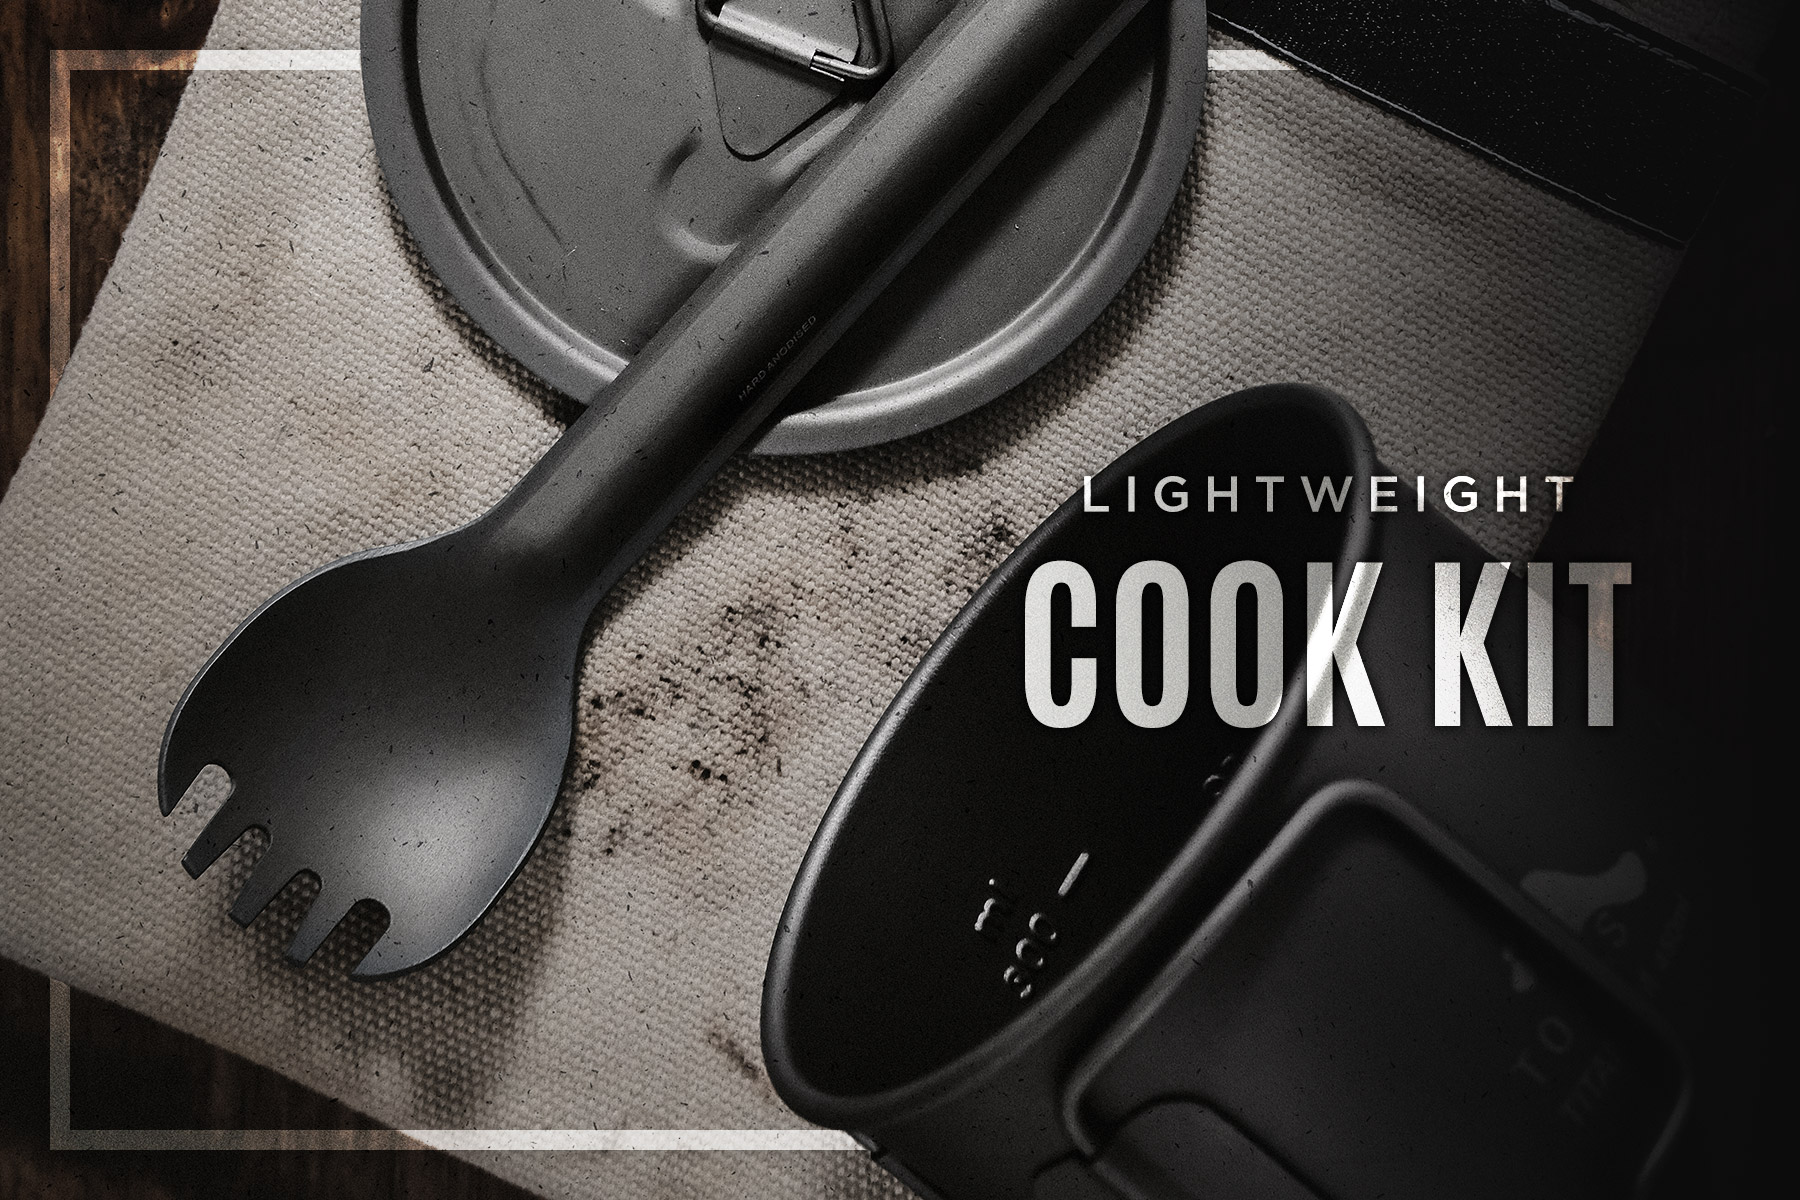 Lightweight Cook Kit • Toaks 450, Klean Kanteen, Sea To Summit & More!